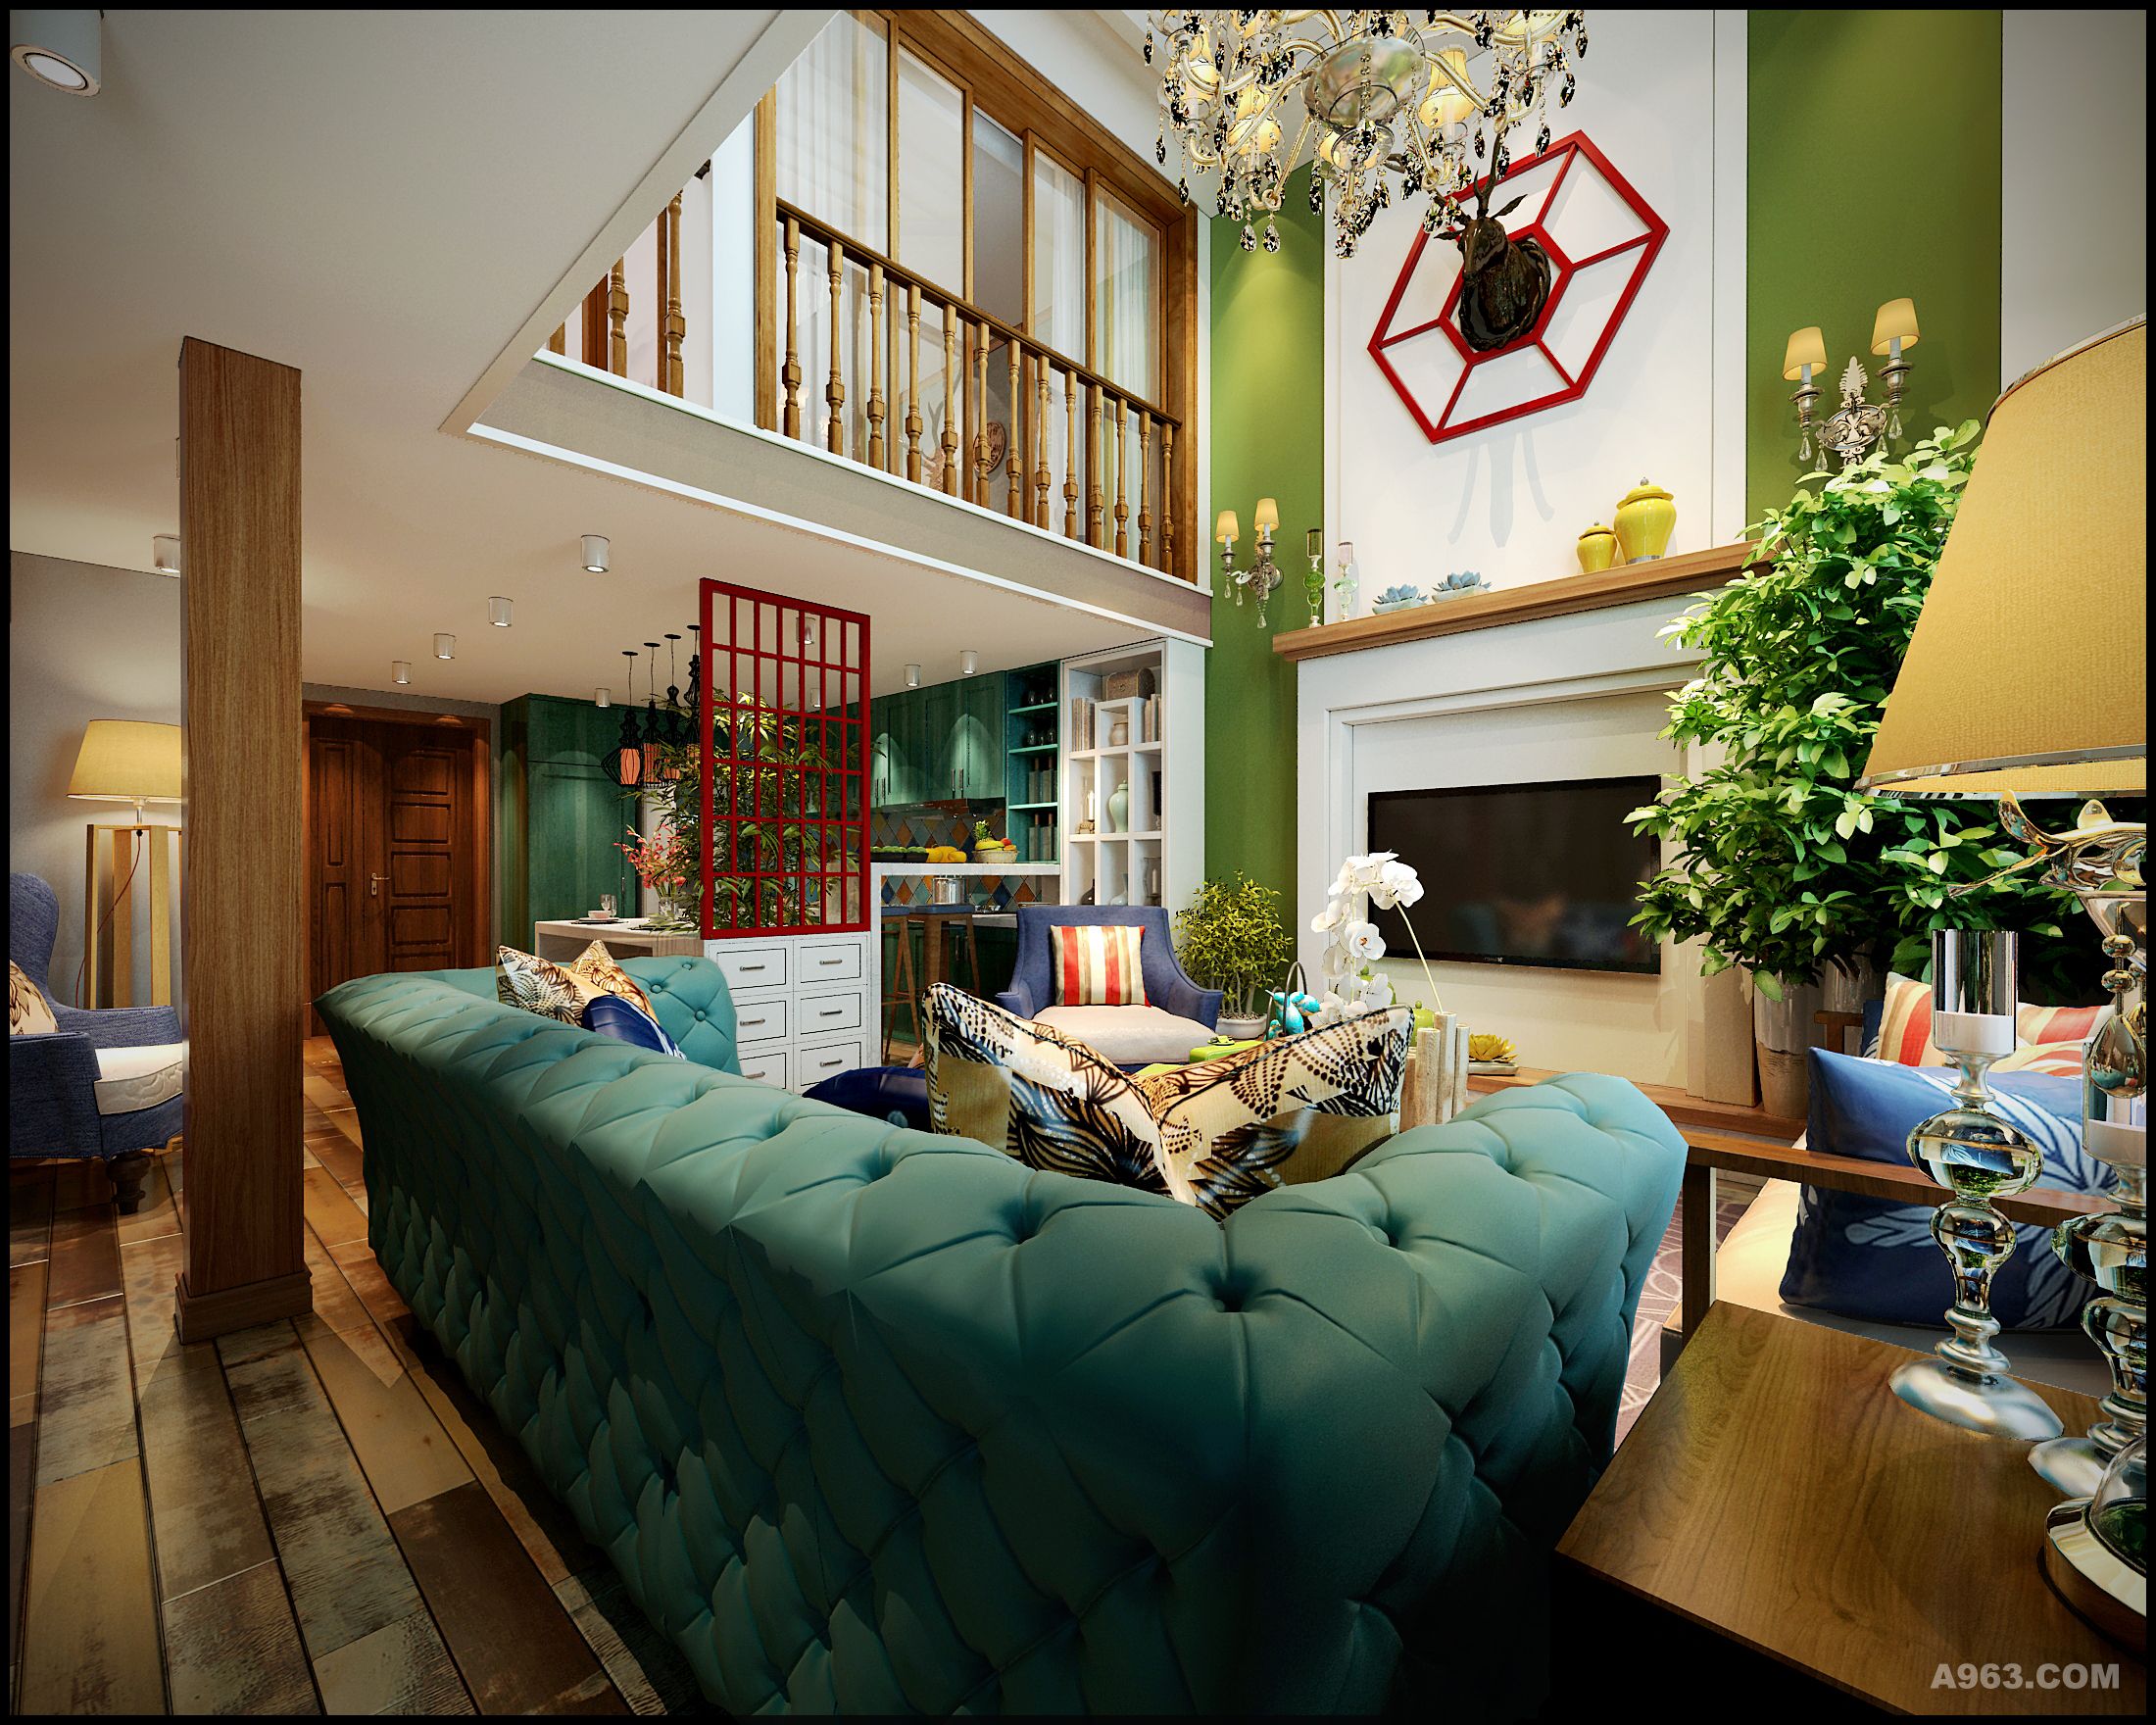     客厅里，有现场定制的美式壁炉和展示柜，后期定制的美式沙发，还有定制的中式窗棂，后期定制的中式沙发，再搭配欧式的鹿头，中西合壁，融合多元素文化。用休闲的地板衬底，绿色的墙面再搭配红色的中式窗棂挑色，形成了强烈的反差。色彩很张扬，但使人感觉到休闲、舒服、放松，是朋友聚会的不二选择。
